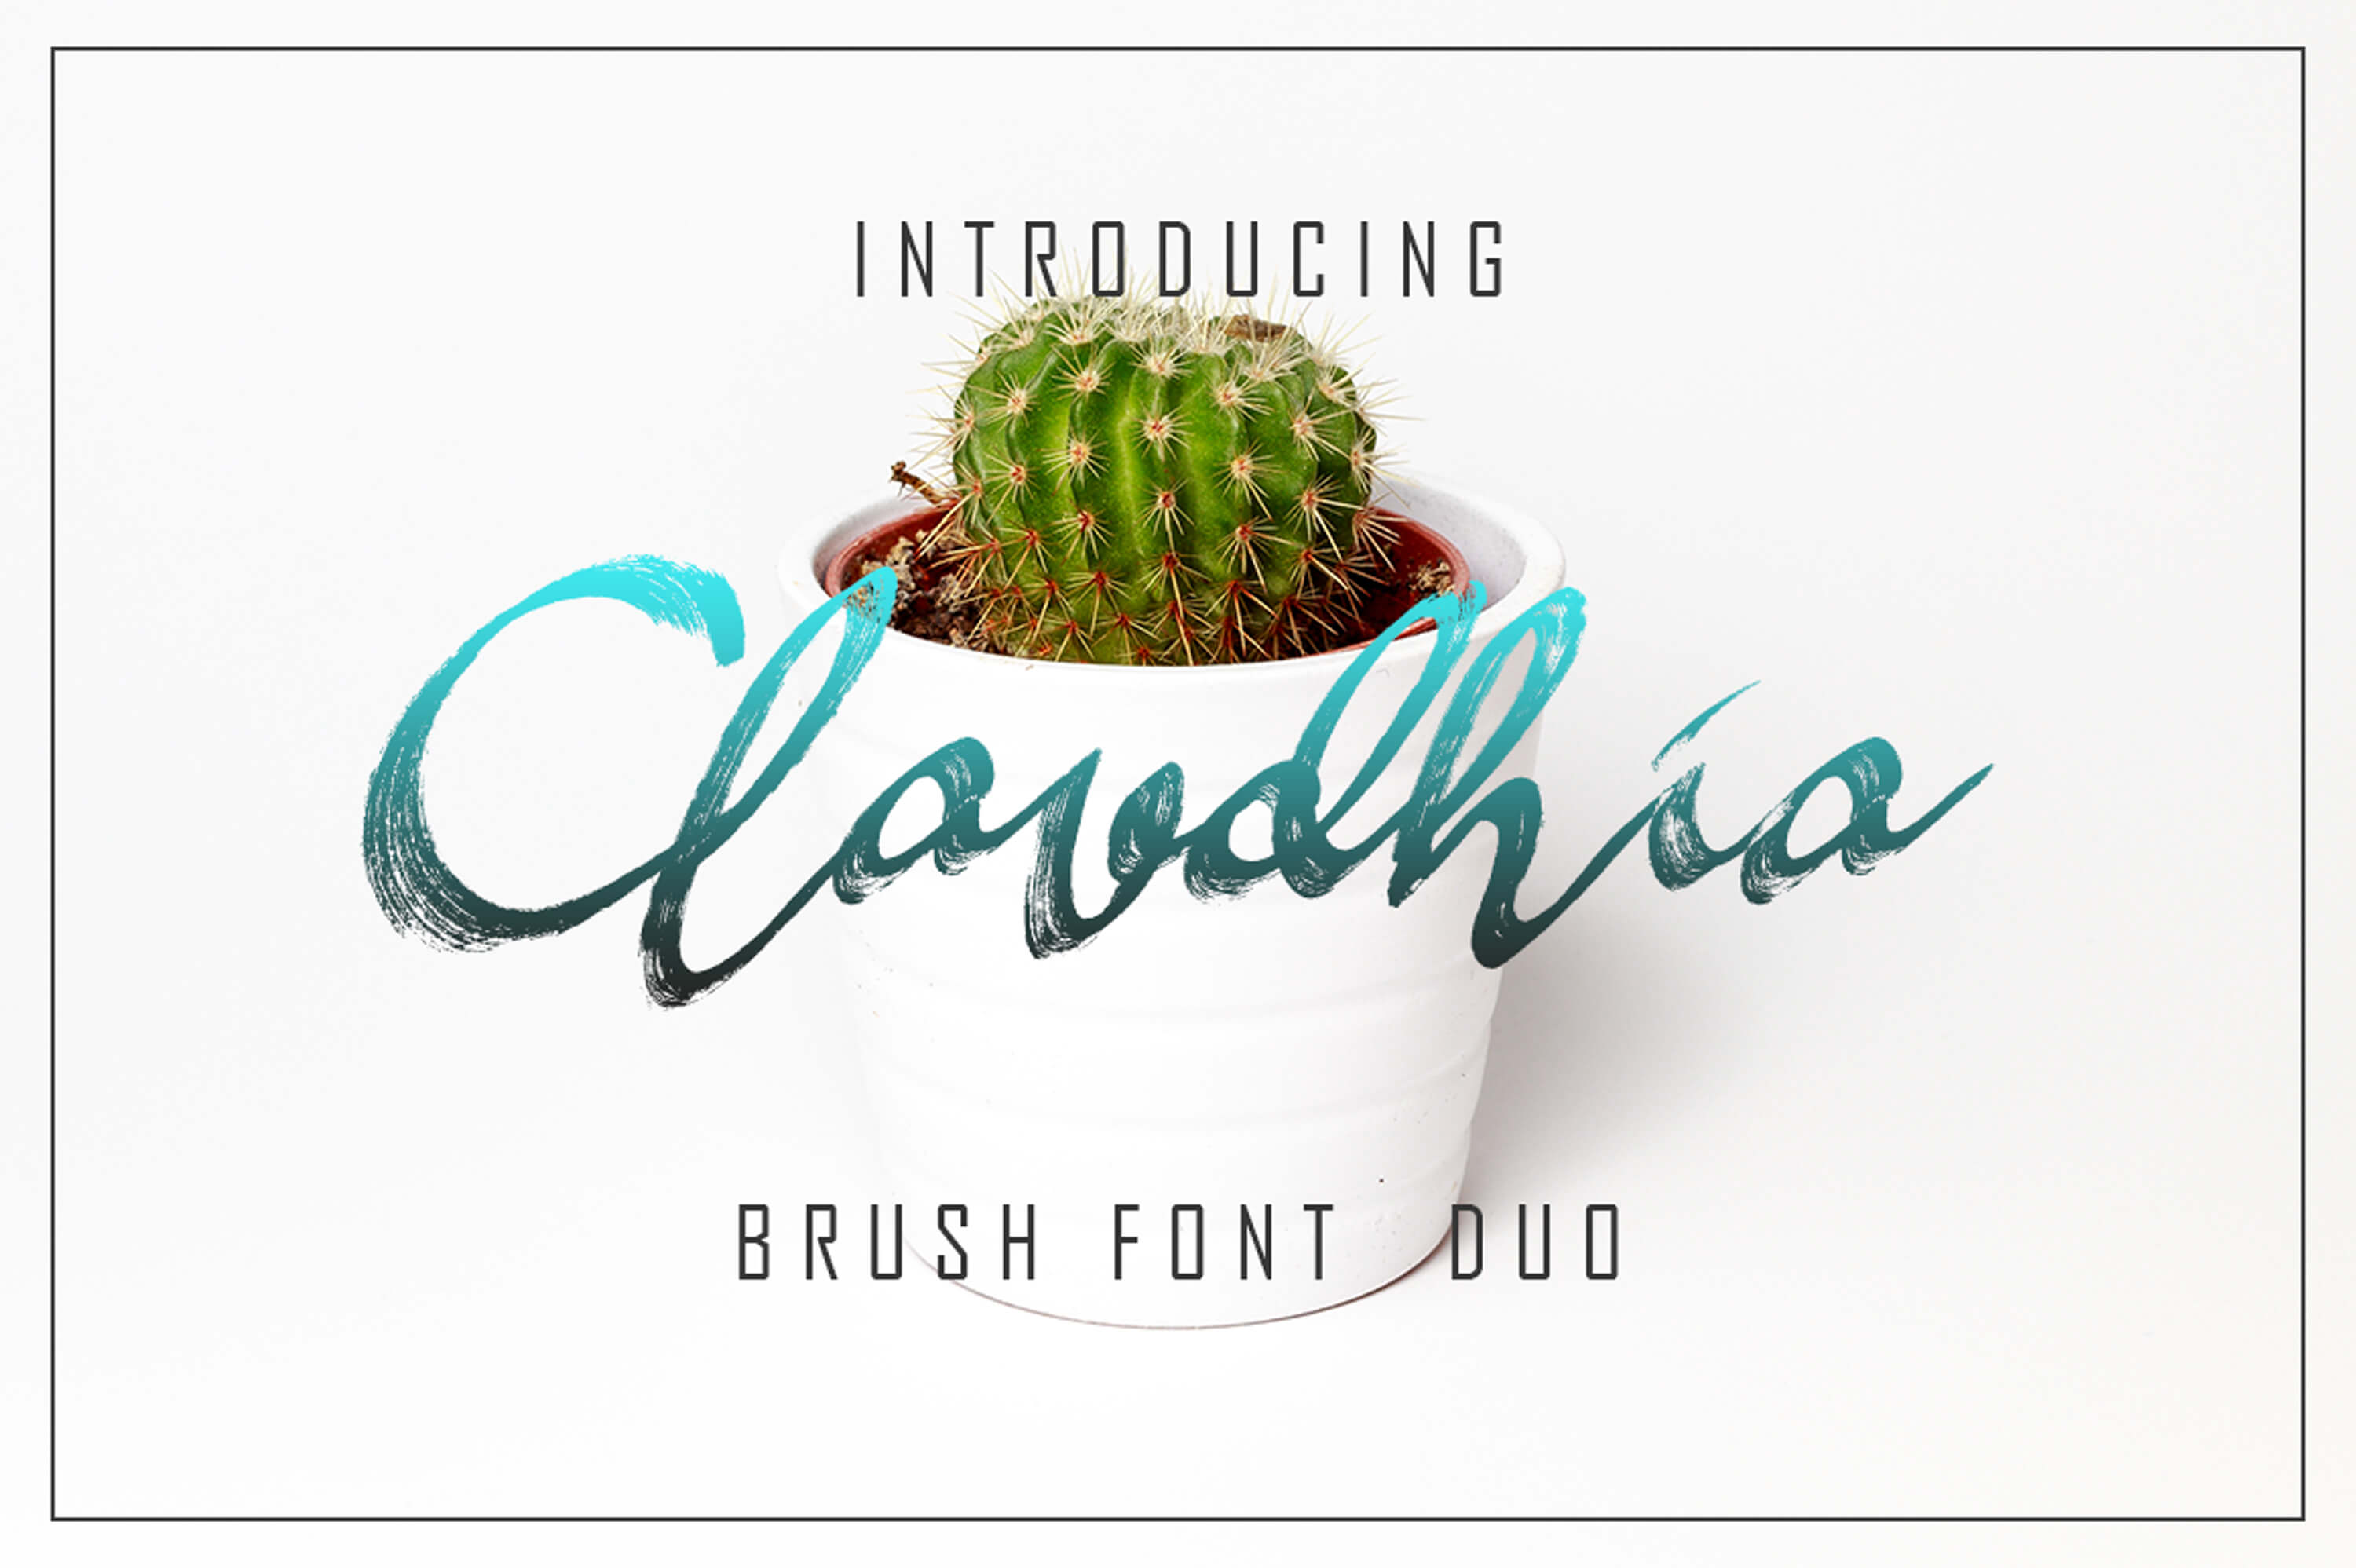 claudhi and jhelio unique playful font.